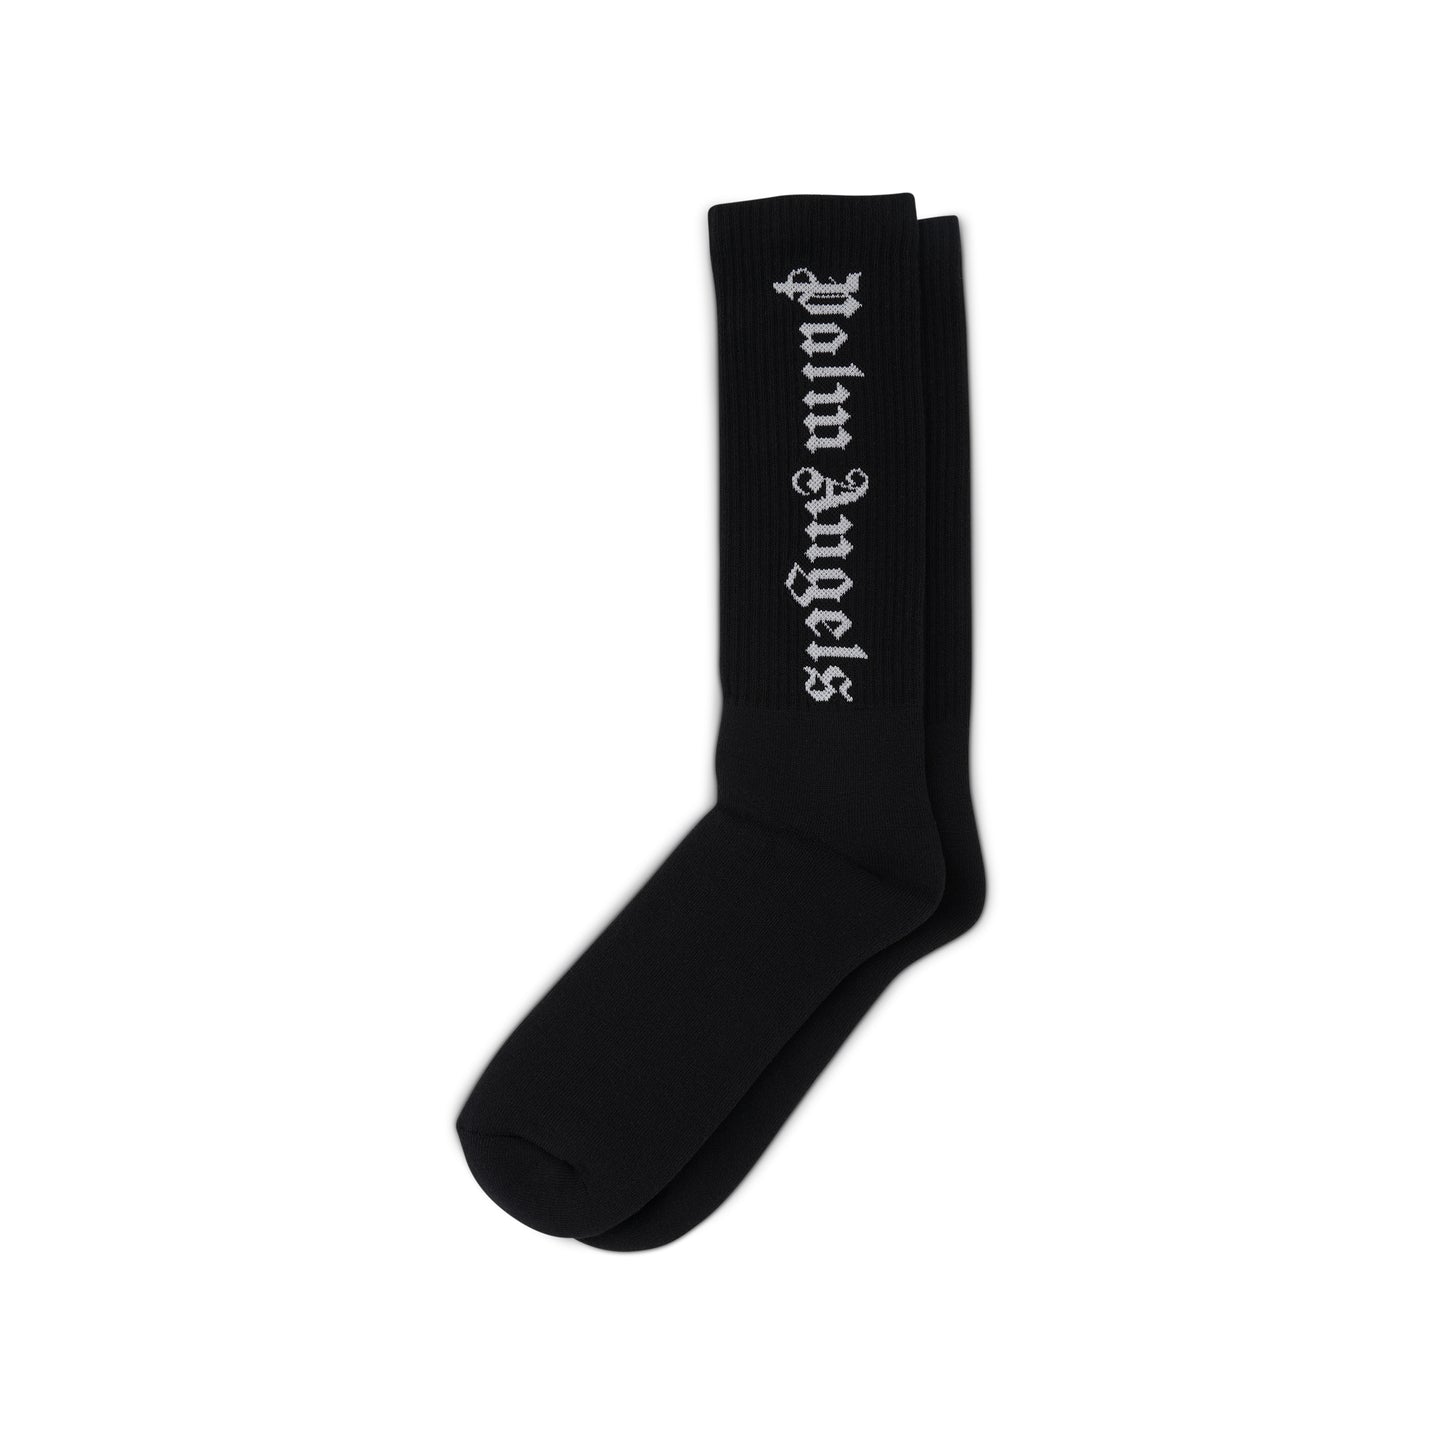 Vertical Logo Socks in Black/White